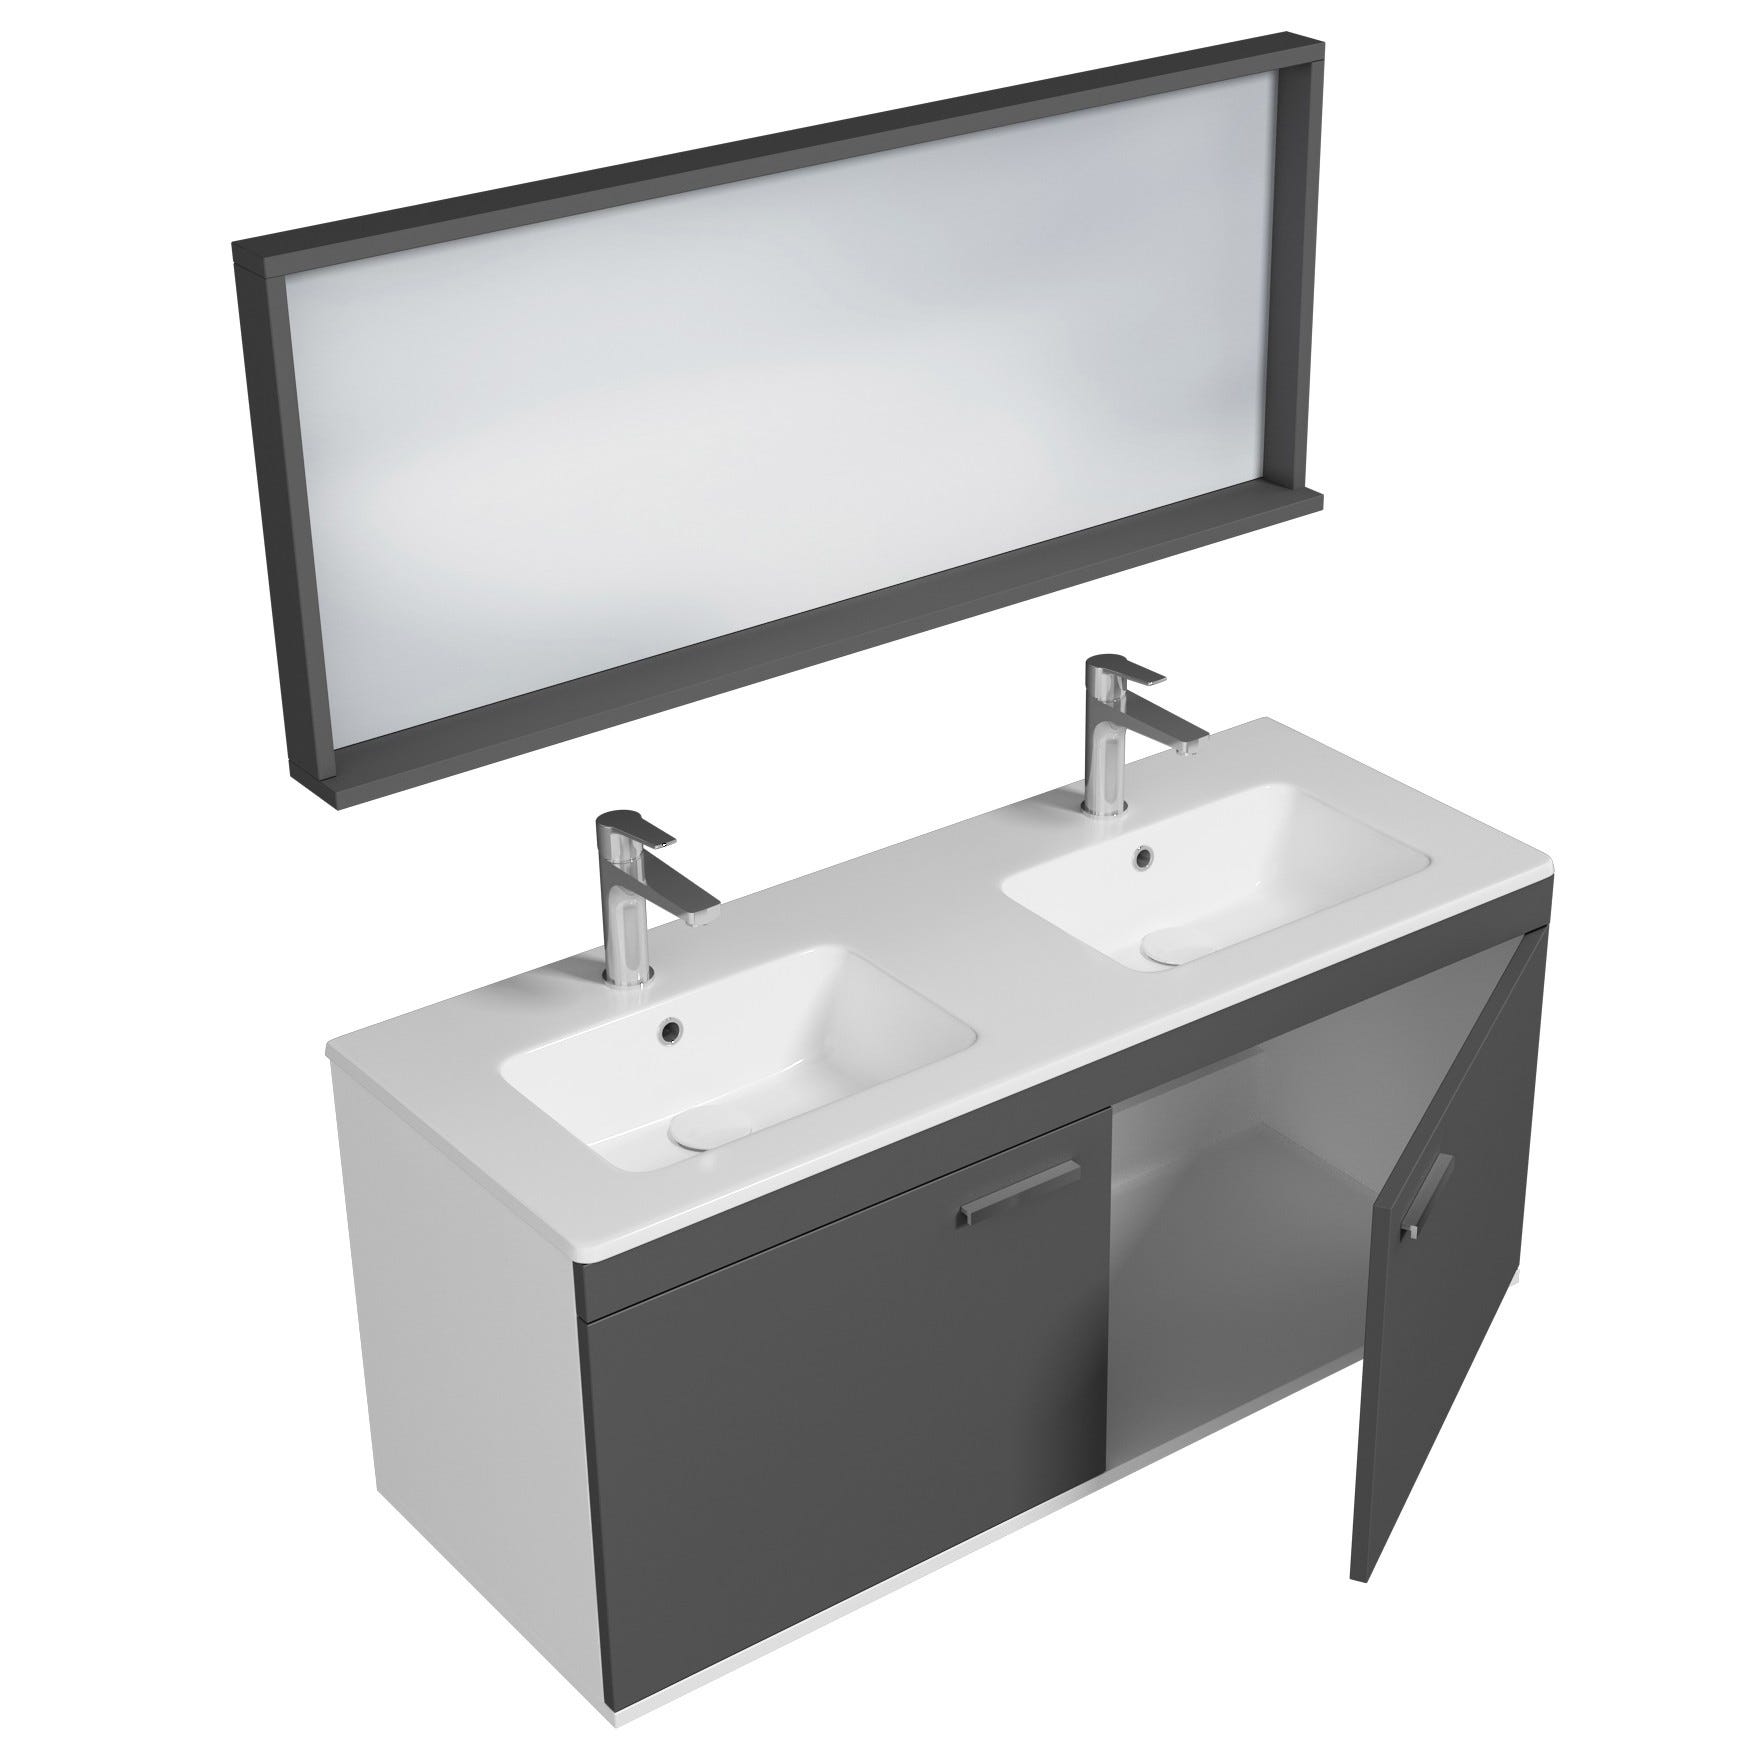 RUBITE Meuble salle de bain double vasque 2 portes gris anthracite largeur 120 cm + miroir cadre 1